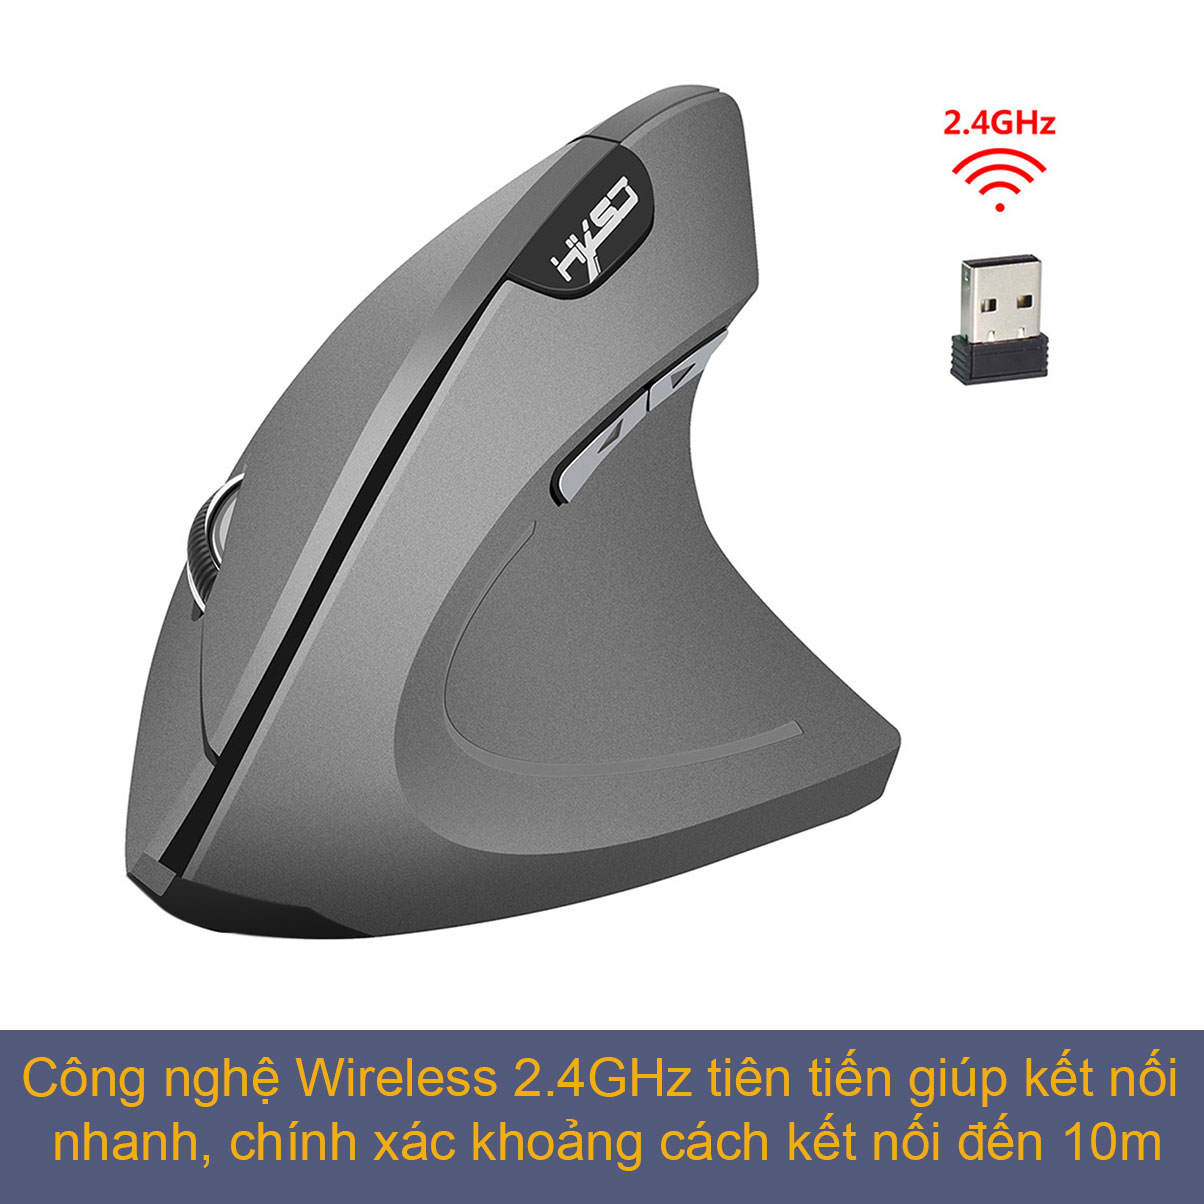 Hình ảnh Chuột không dây kiểu đứng sạc pin HXSJ T22 wireless USB 2.4GHz chống mỏi tay chuyên dùng cho pc laptop macbook ipad tivi - Hàng chính hãng